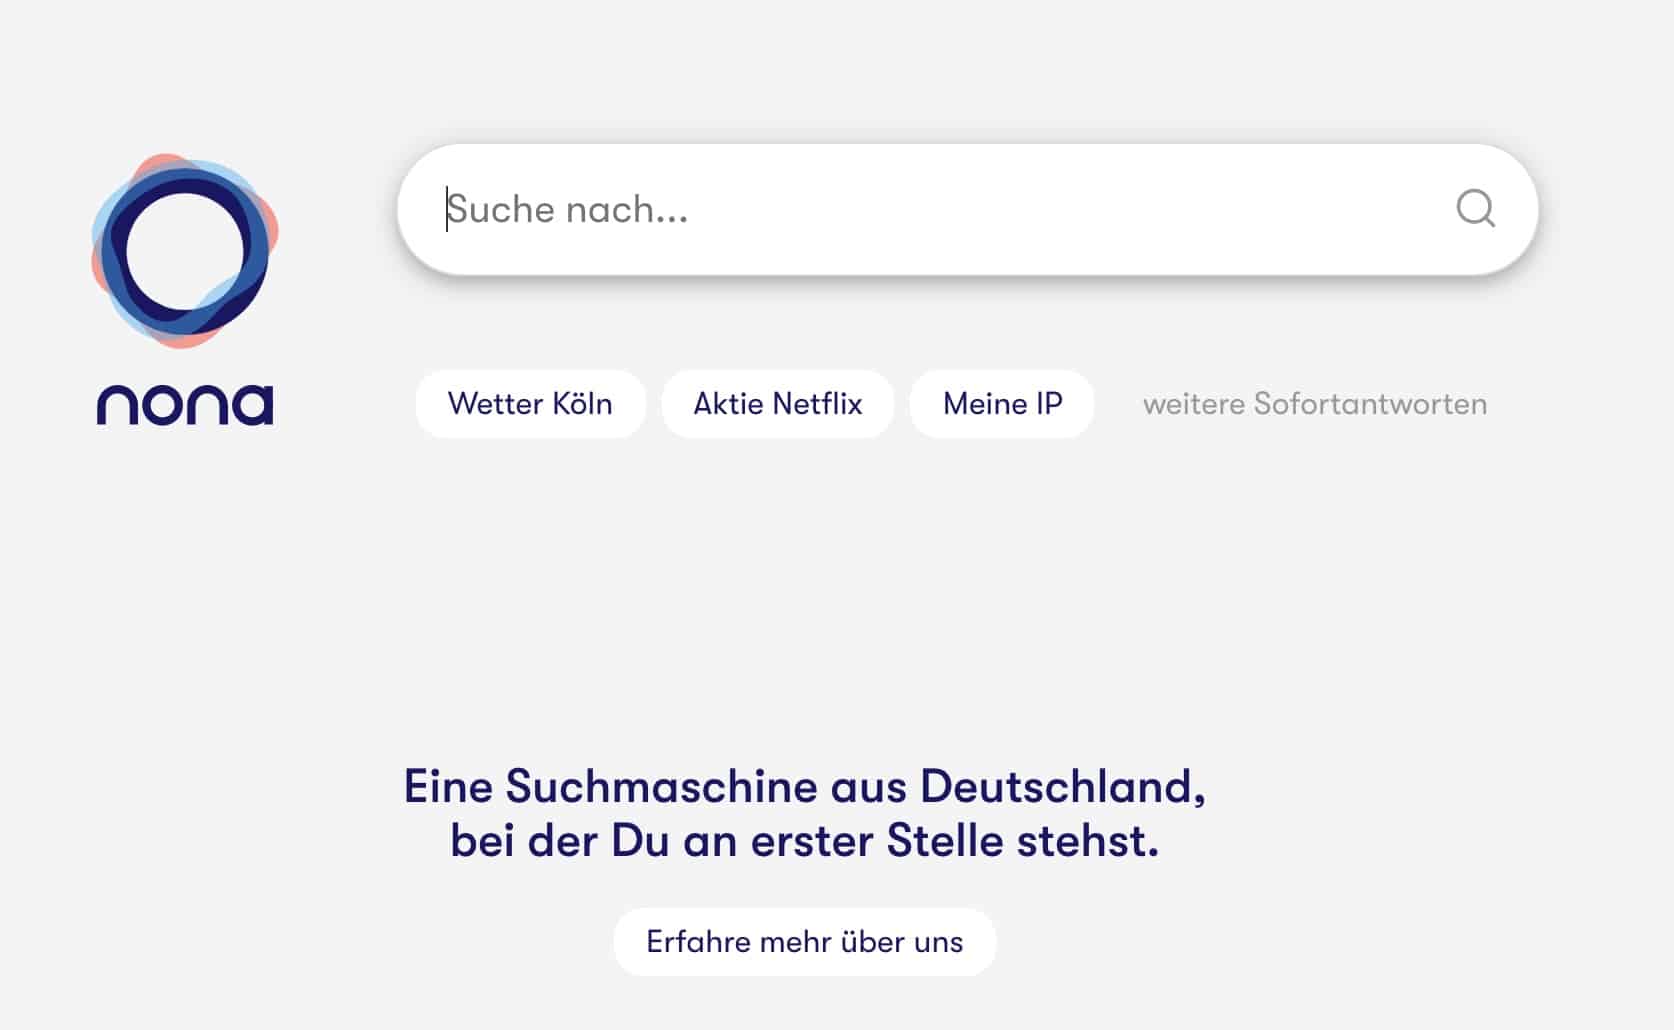 Die werbefreie Suchmaschine nona aus Deutschland